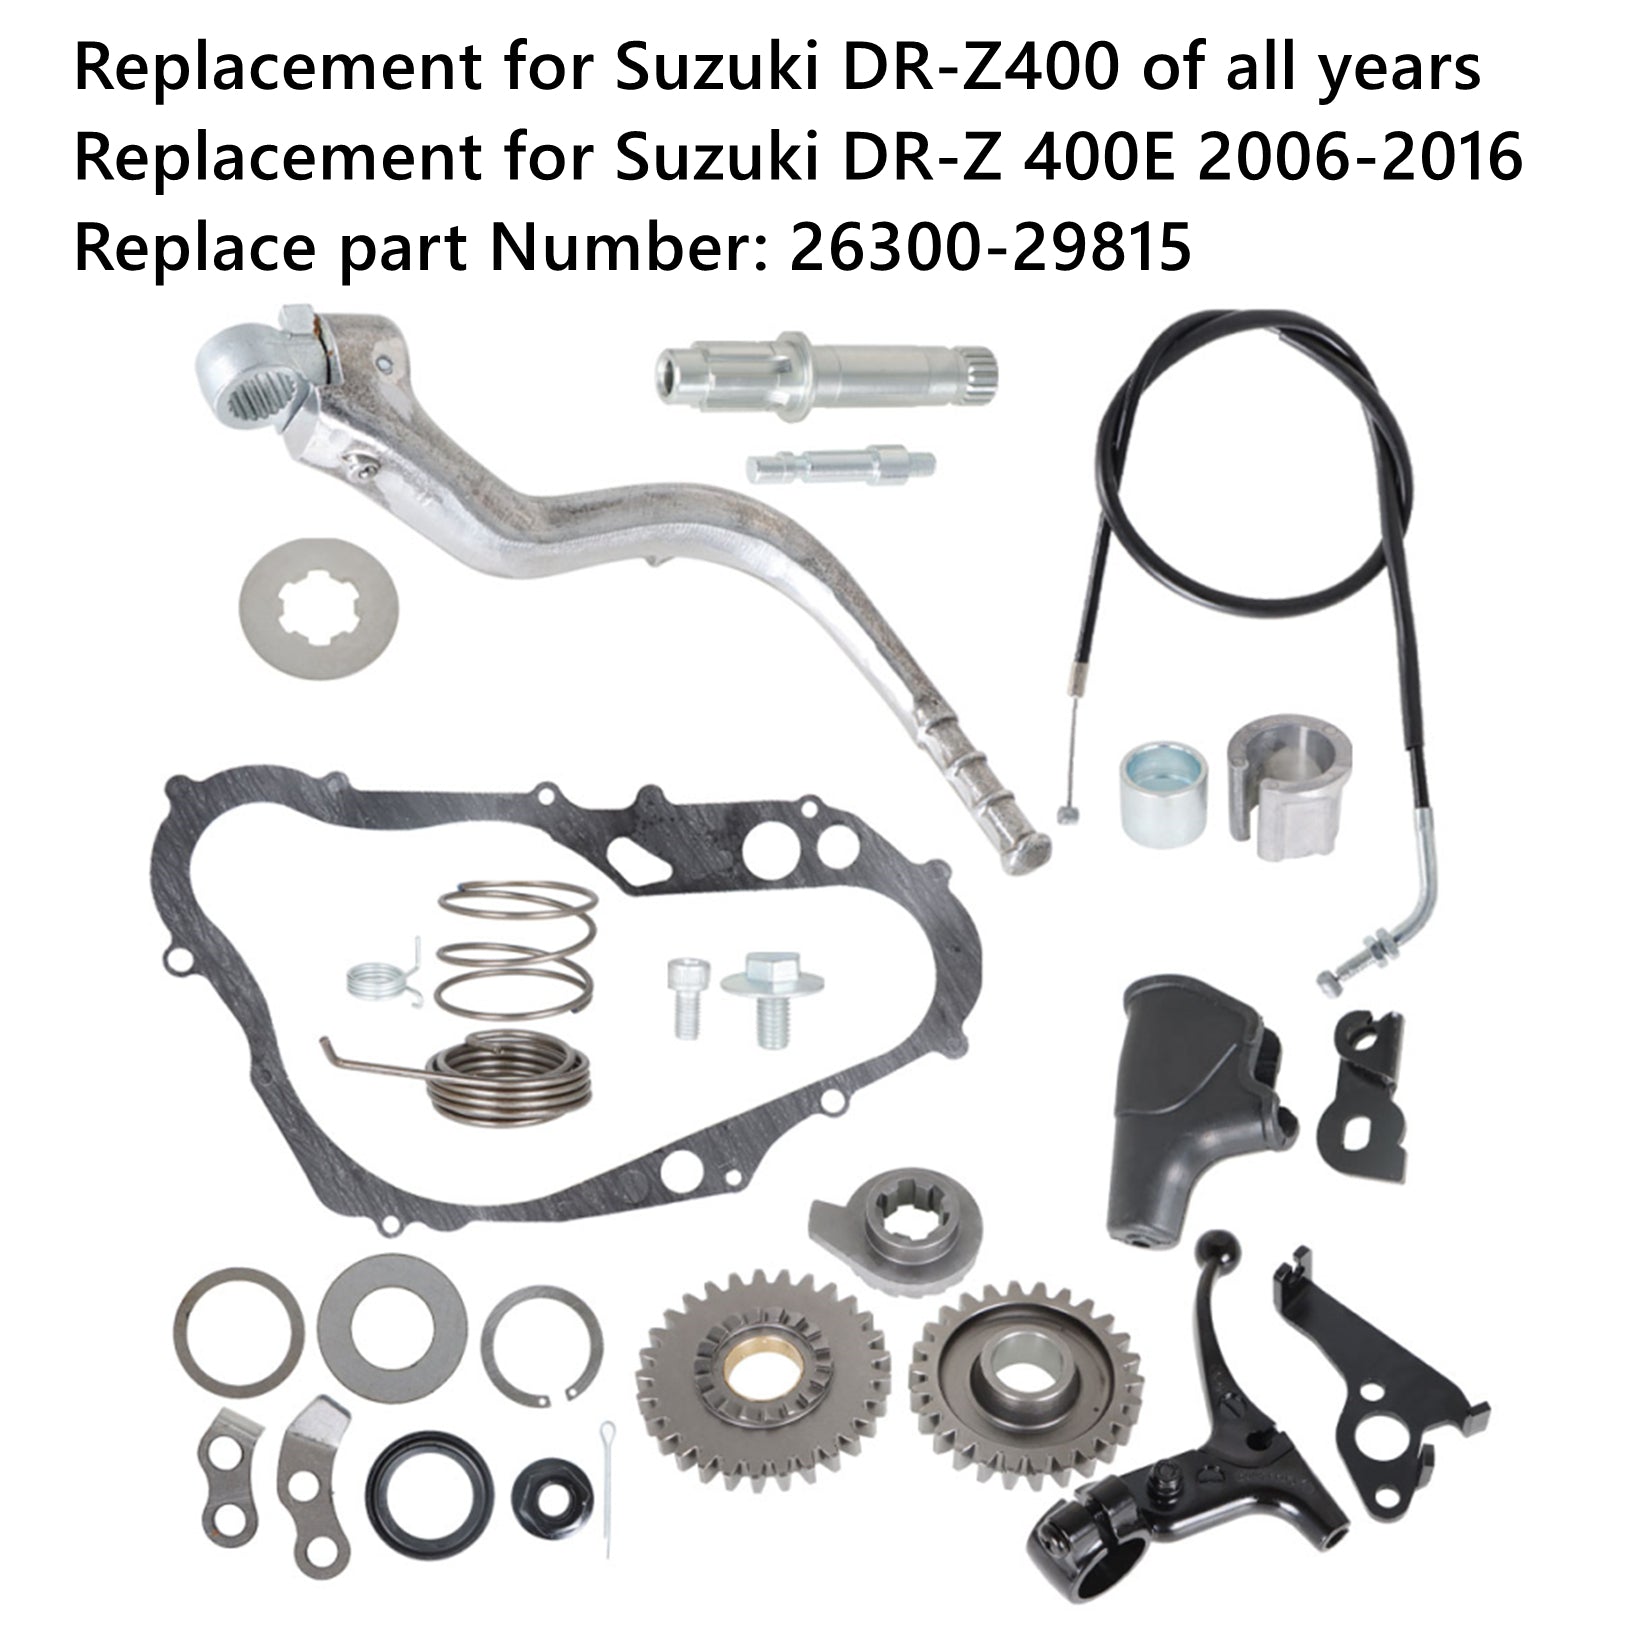 labwork Complete Kick Start Kit Replacement for Suzuki RZ400 DRZ 400 26300-29815